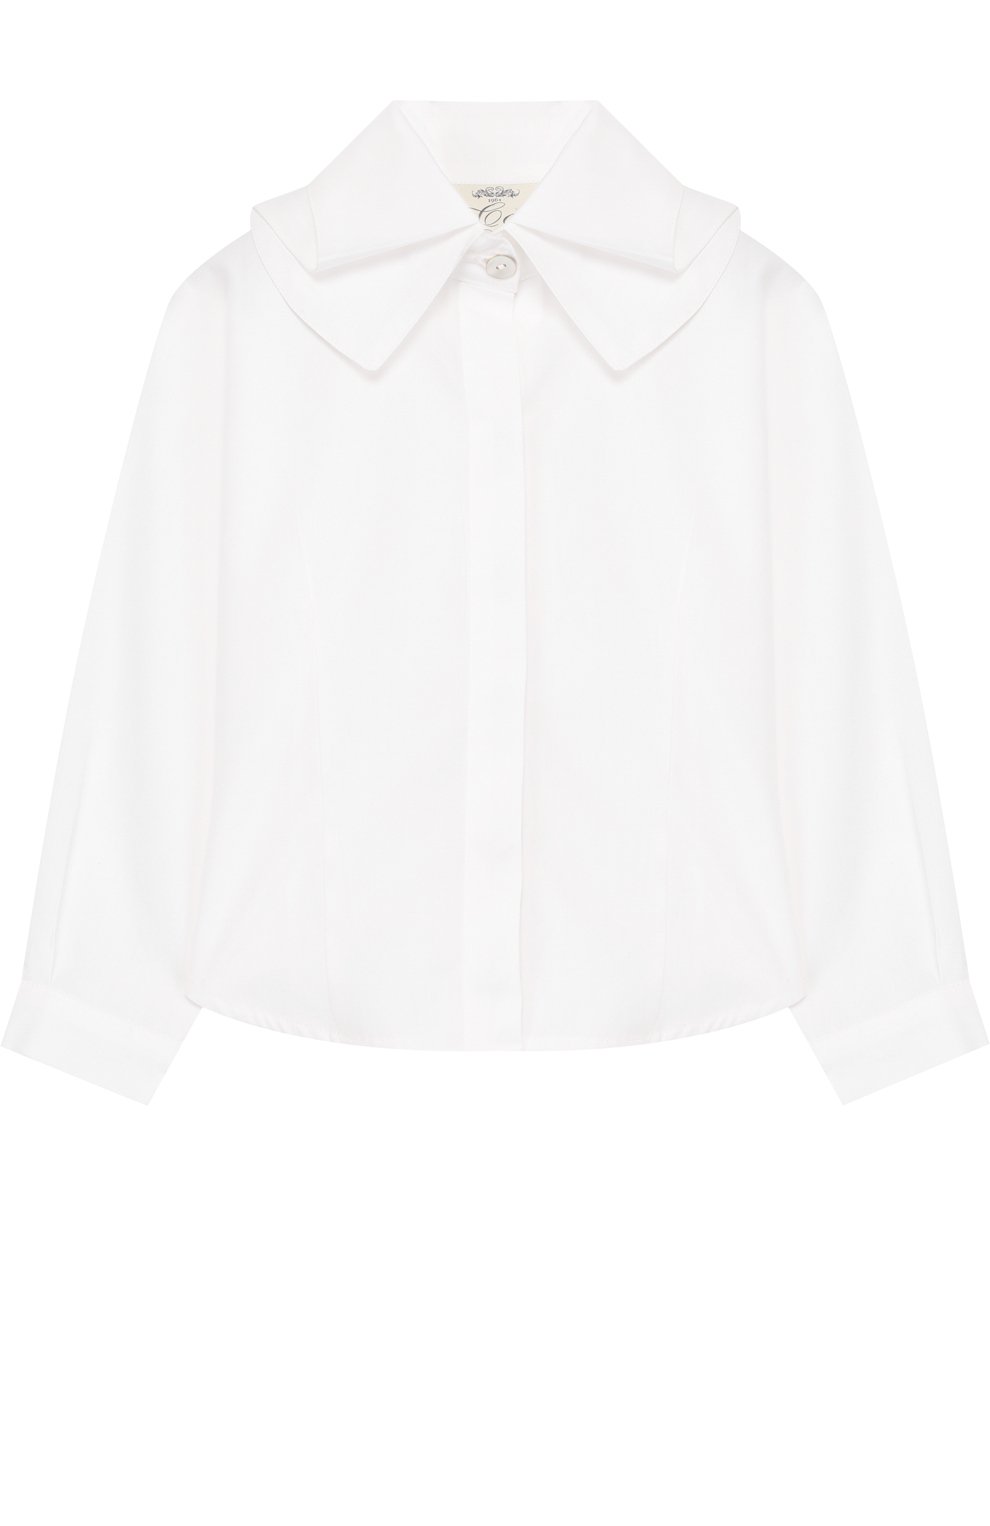 Блузы Caf, Хлопковая блуза с декоративным воротником Caf, Италия, Белый, Хлопок: 80%; Полиэстер: 20%;, 5350862  - купить